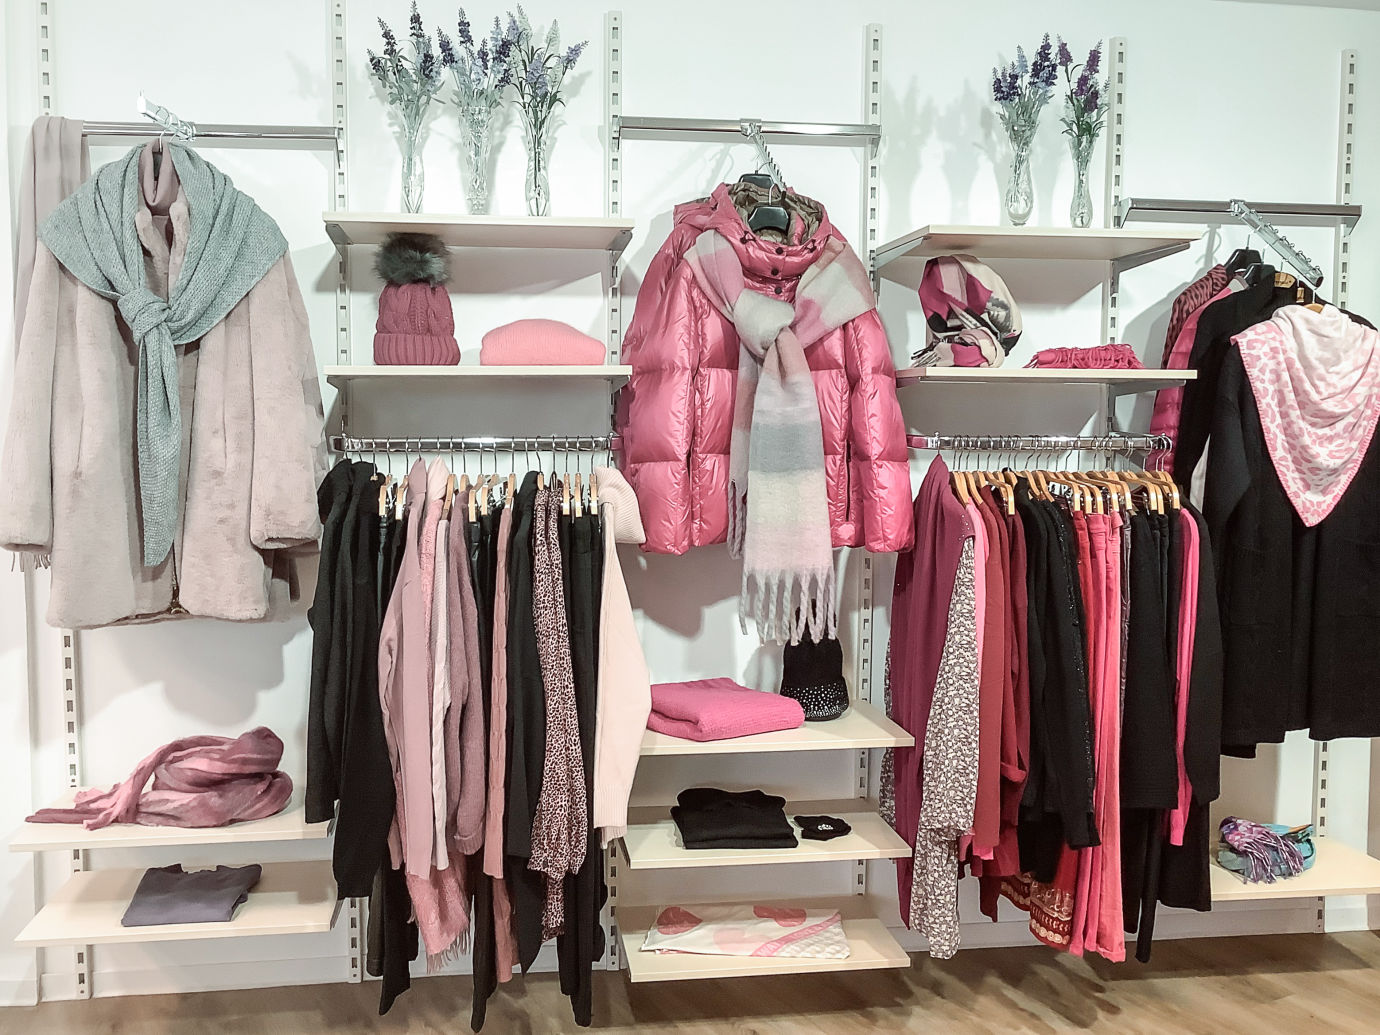 Jacken, Hosen, Accessoires, Damenbekleidung in rosa, schwarz und grau